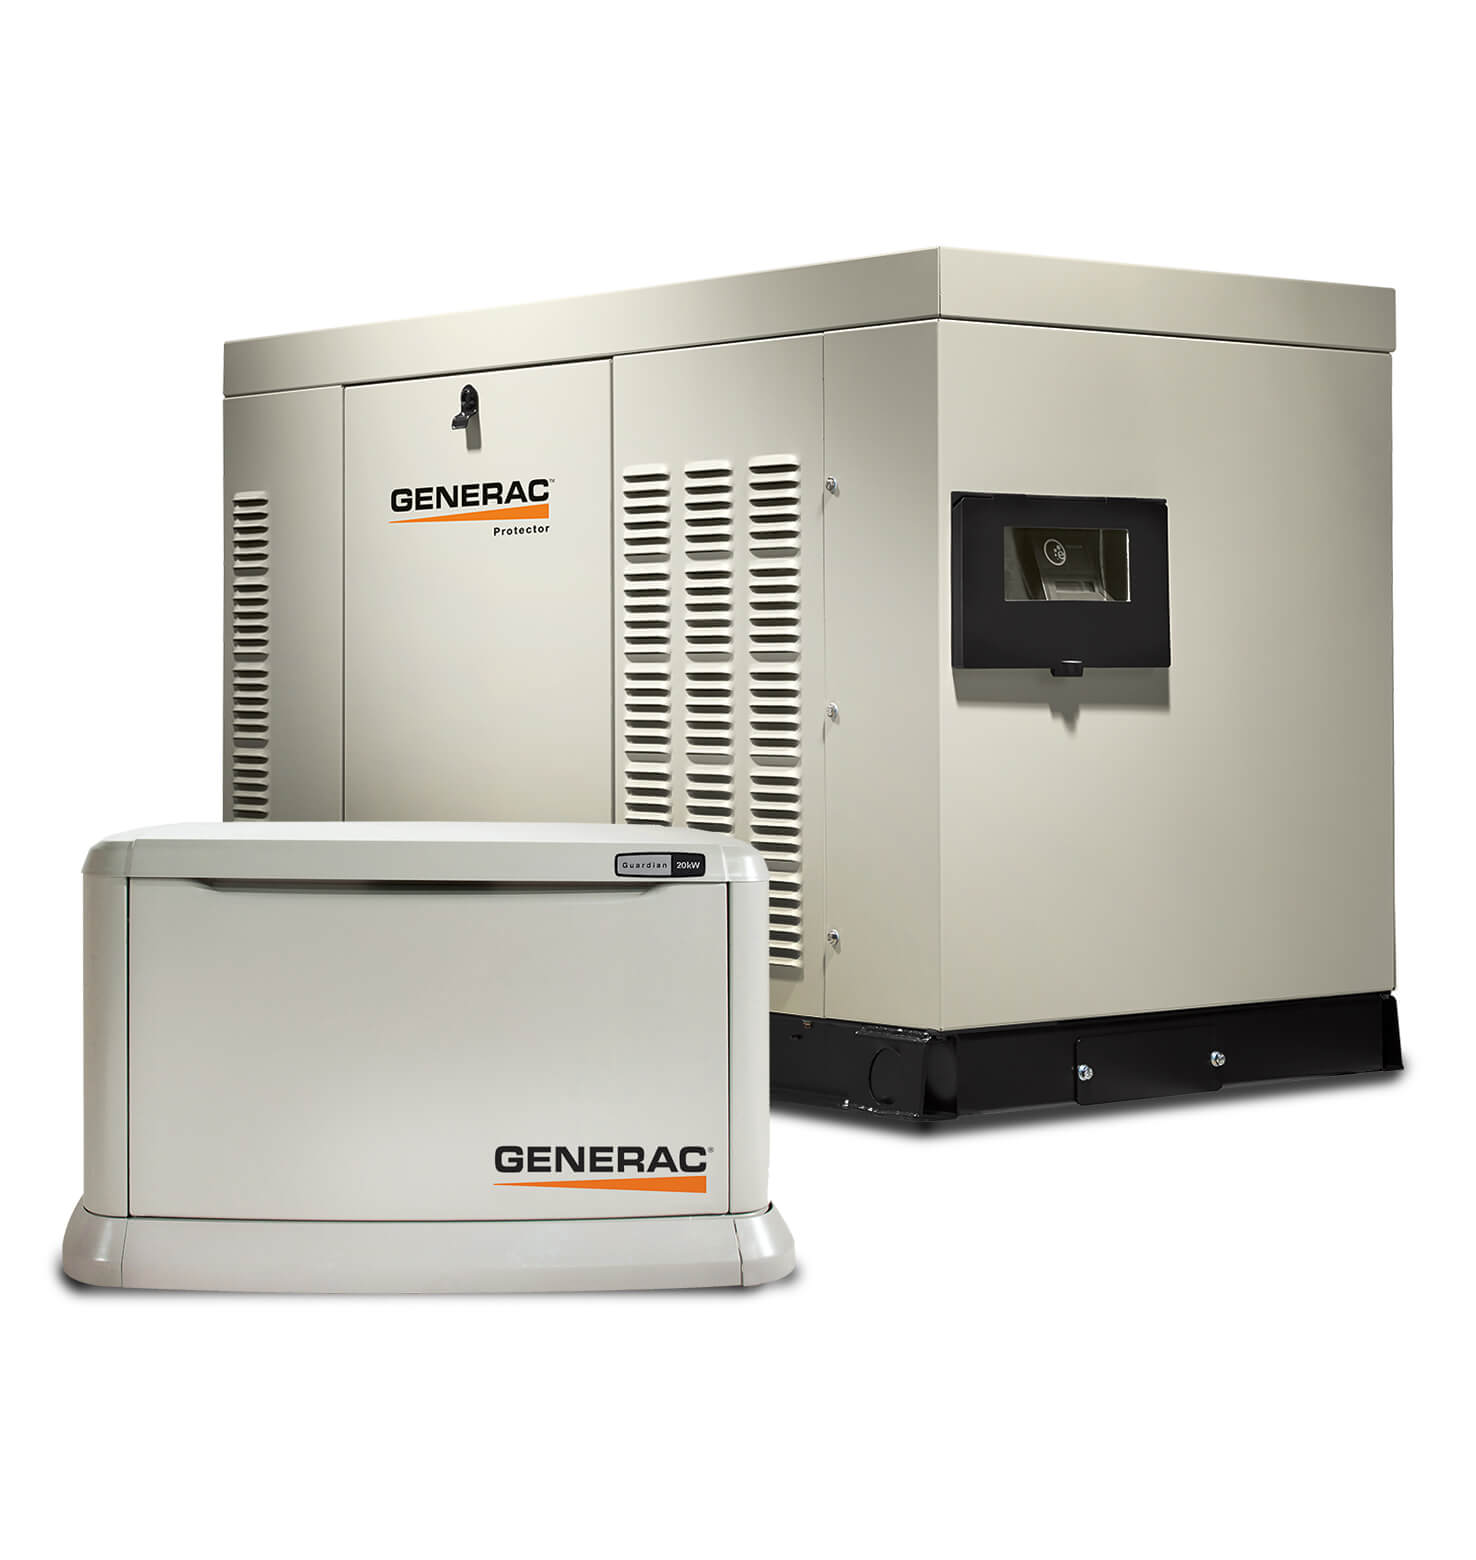 Two Generac Generators